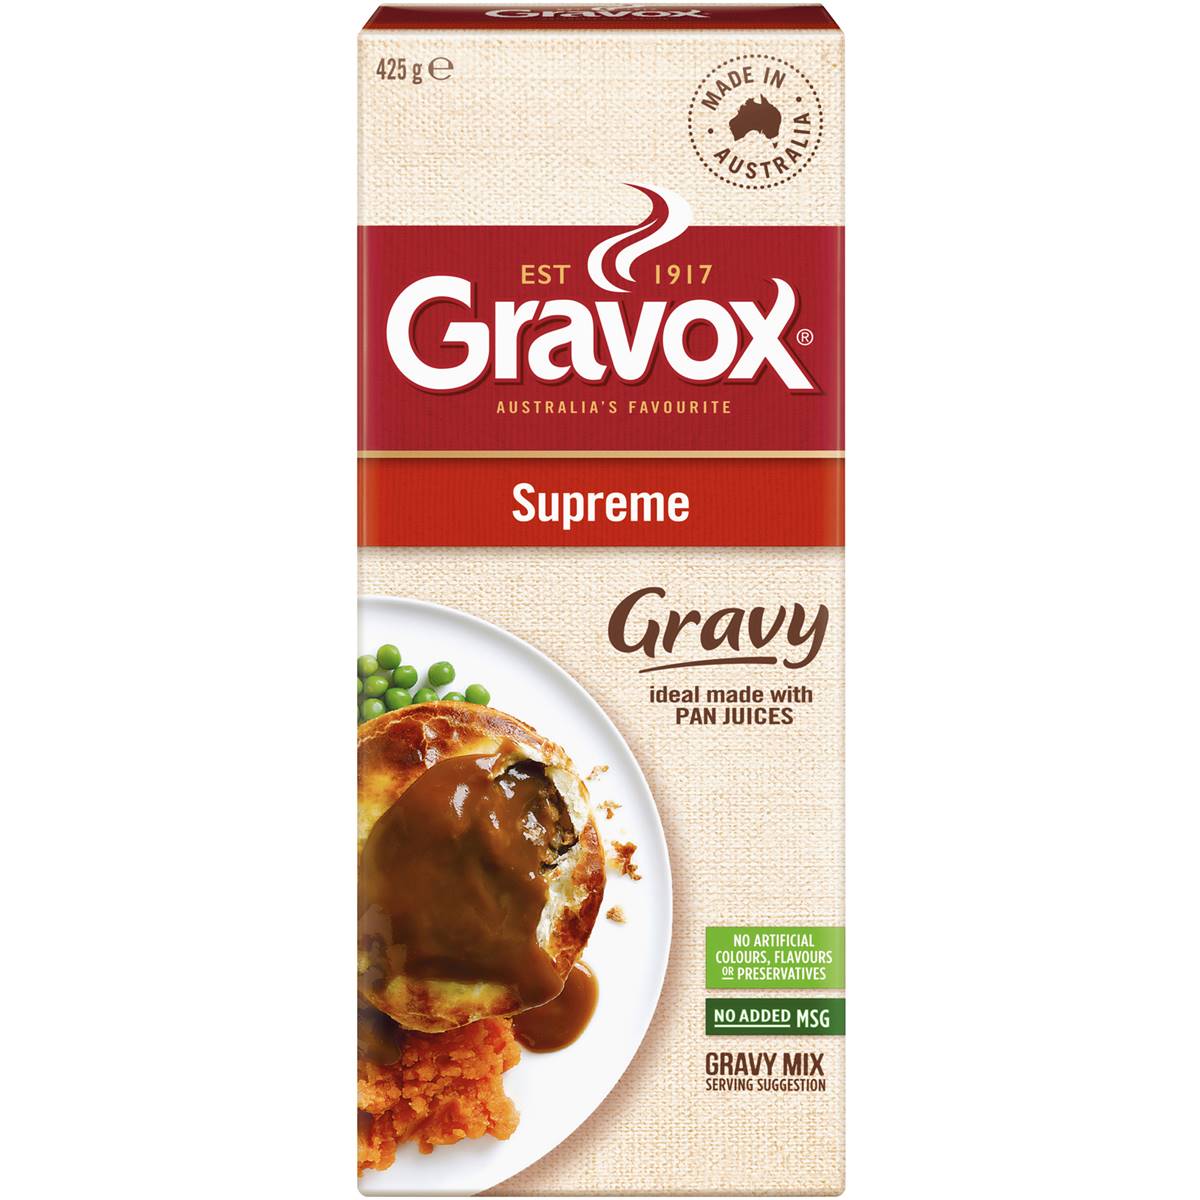 Gravox Gravy Mix Supreme